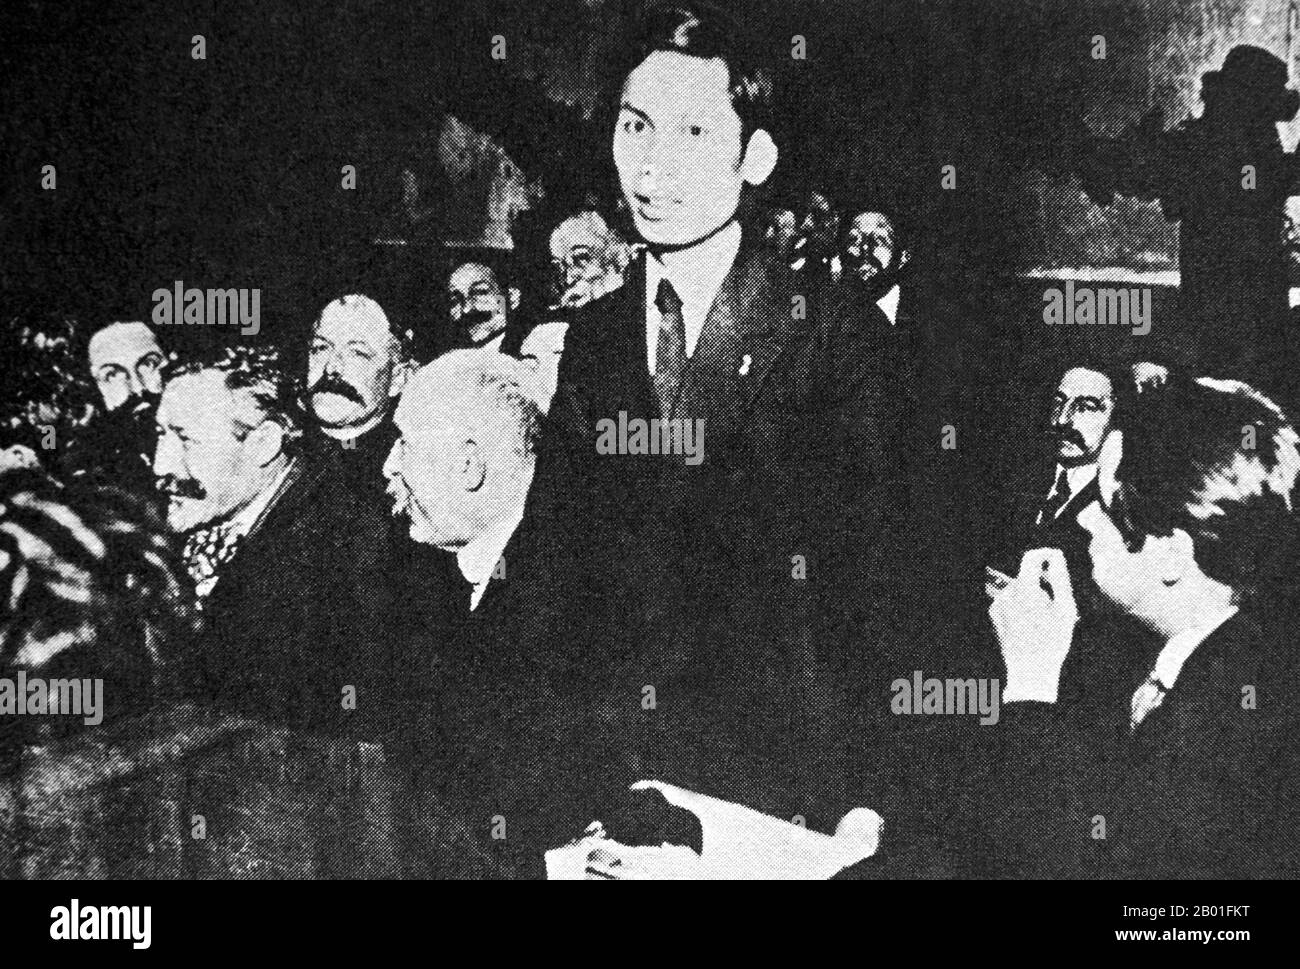 Vietnam/France : un jeune Ho Chi Minh (19 mai 1890 - 3 septembre 1969) au Congrès du Parti socialiste français, 1920. Hồ Chí Minh, né Nguyễn Sinh Cung et également connu sous le nom de Nguyễn Ái Quốc était un leader communiste vietnamien révolutionnaire qui était premier ministre (1946-1955) et président (1945-1969) de la République démocratique du Vietnam (Nord Vietnam). Il forme la République démocratique du Vietnam en 1945 et dirige le Viet Cong pendant la guerre du Vietnam jusqu'à sa mort. Hồ a dirigé le mouvement pour l'indépendance du Viet Minh à partir de 1941, bien qu'il ait perdu son pouvoir politique à la fin de 1950s, restant à la tête d'une figure de proue. Banque D'Images